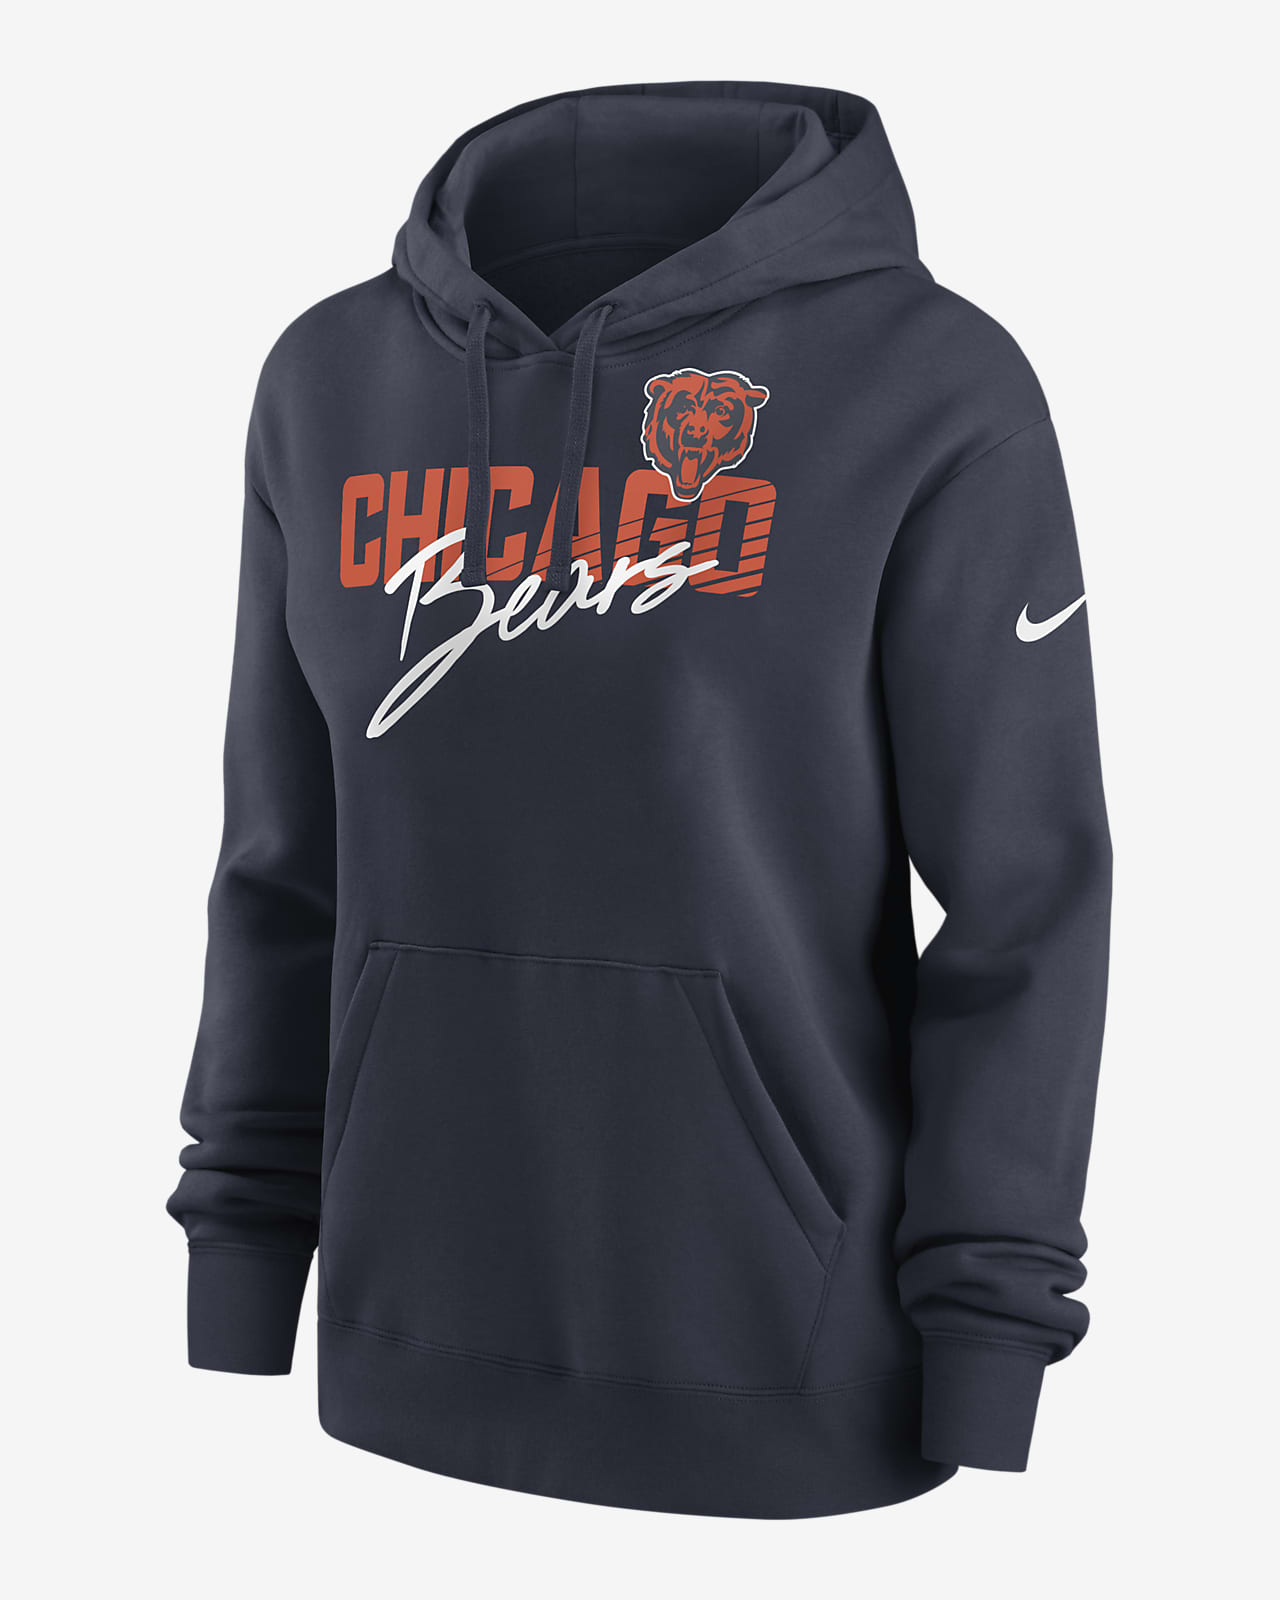 chicago bears women's zip up hoodie